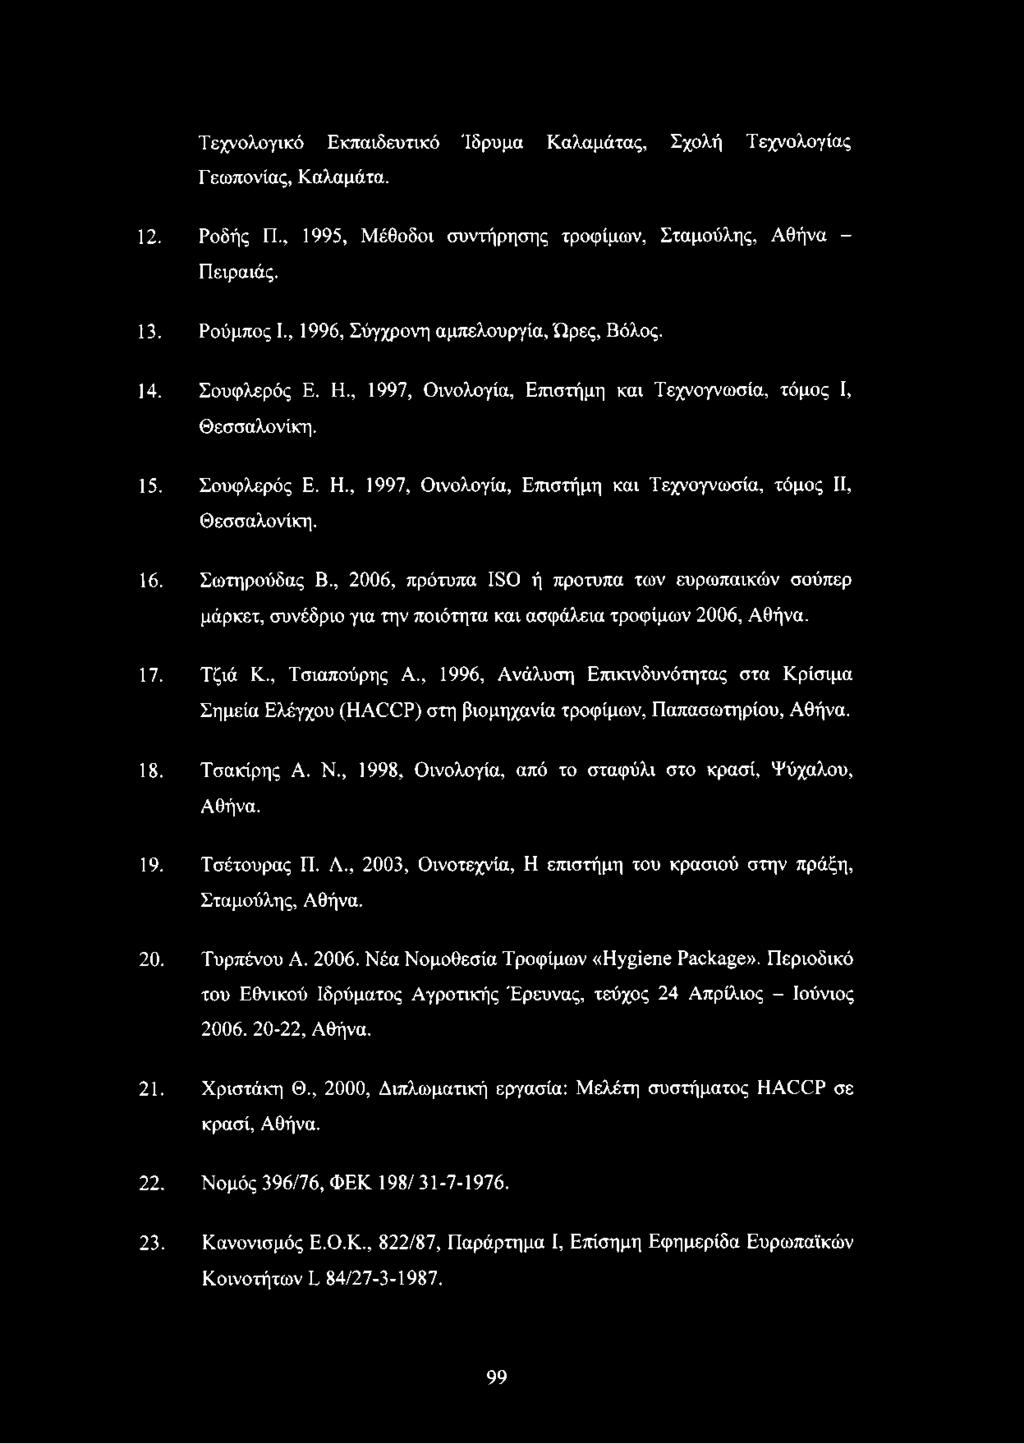 16. Σωτηρούδας Β., 2006, πρότυπα ISO ή πρότυπα των ευρωπαϊκών σούπερ μάρκετ, συνέδριο για την ποιότητα και ασφάλεια τροφίμων 2006, Αθήνα. 17. Τζιά Κ., Τσιαπούρης Α.